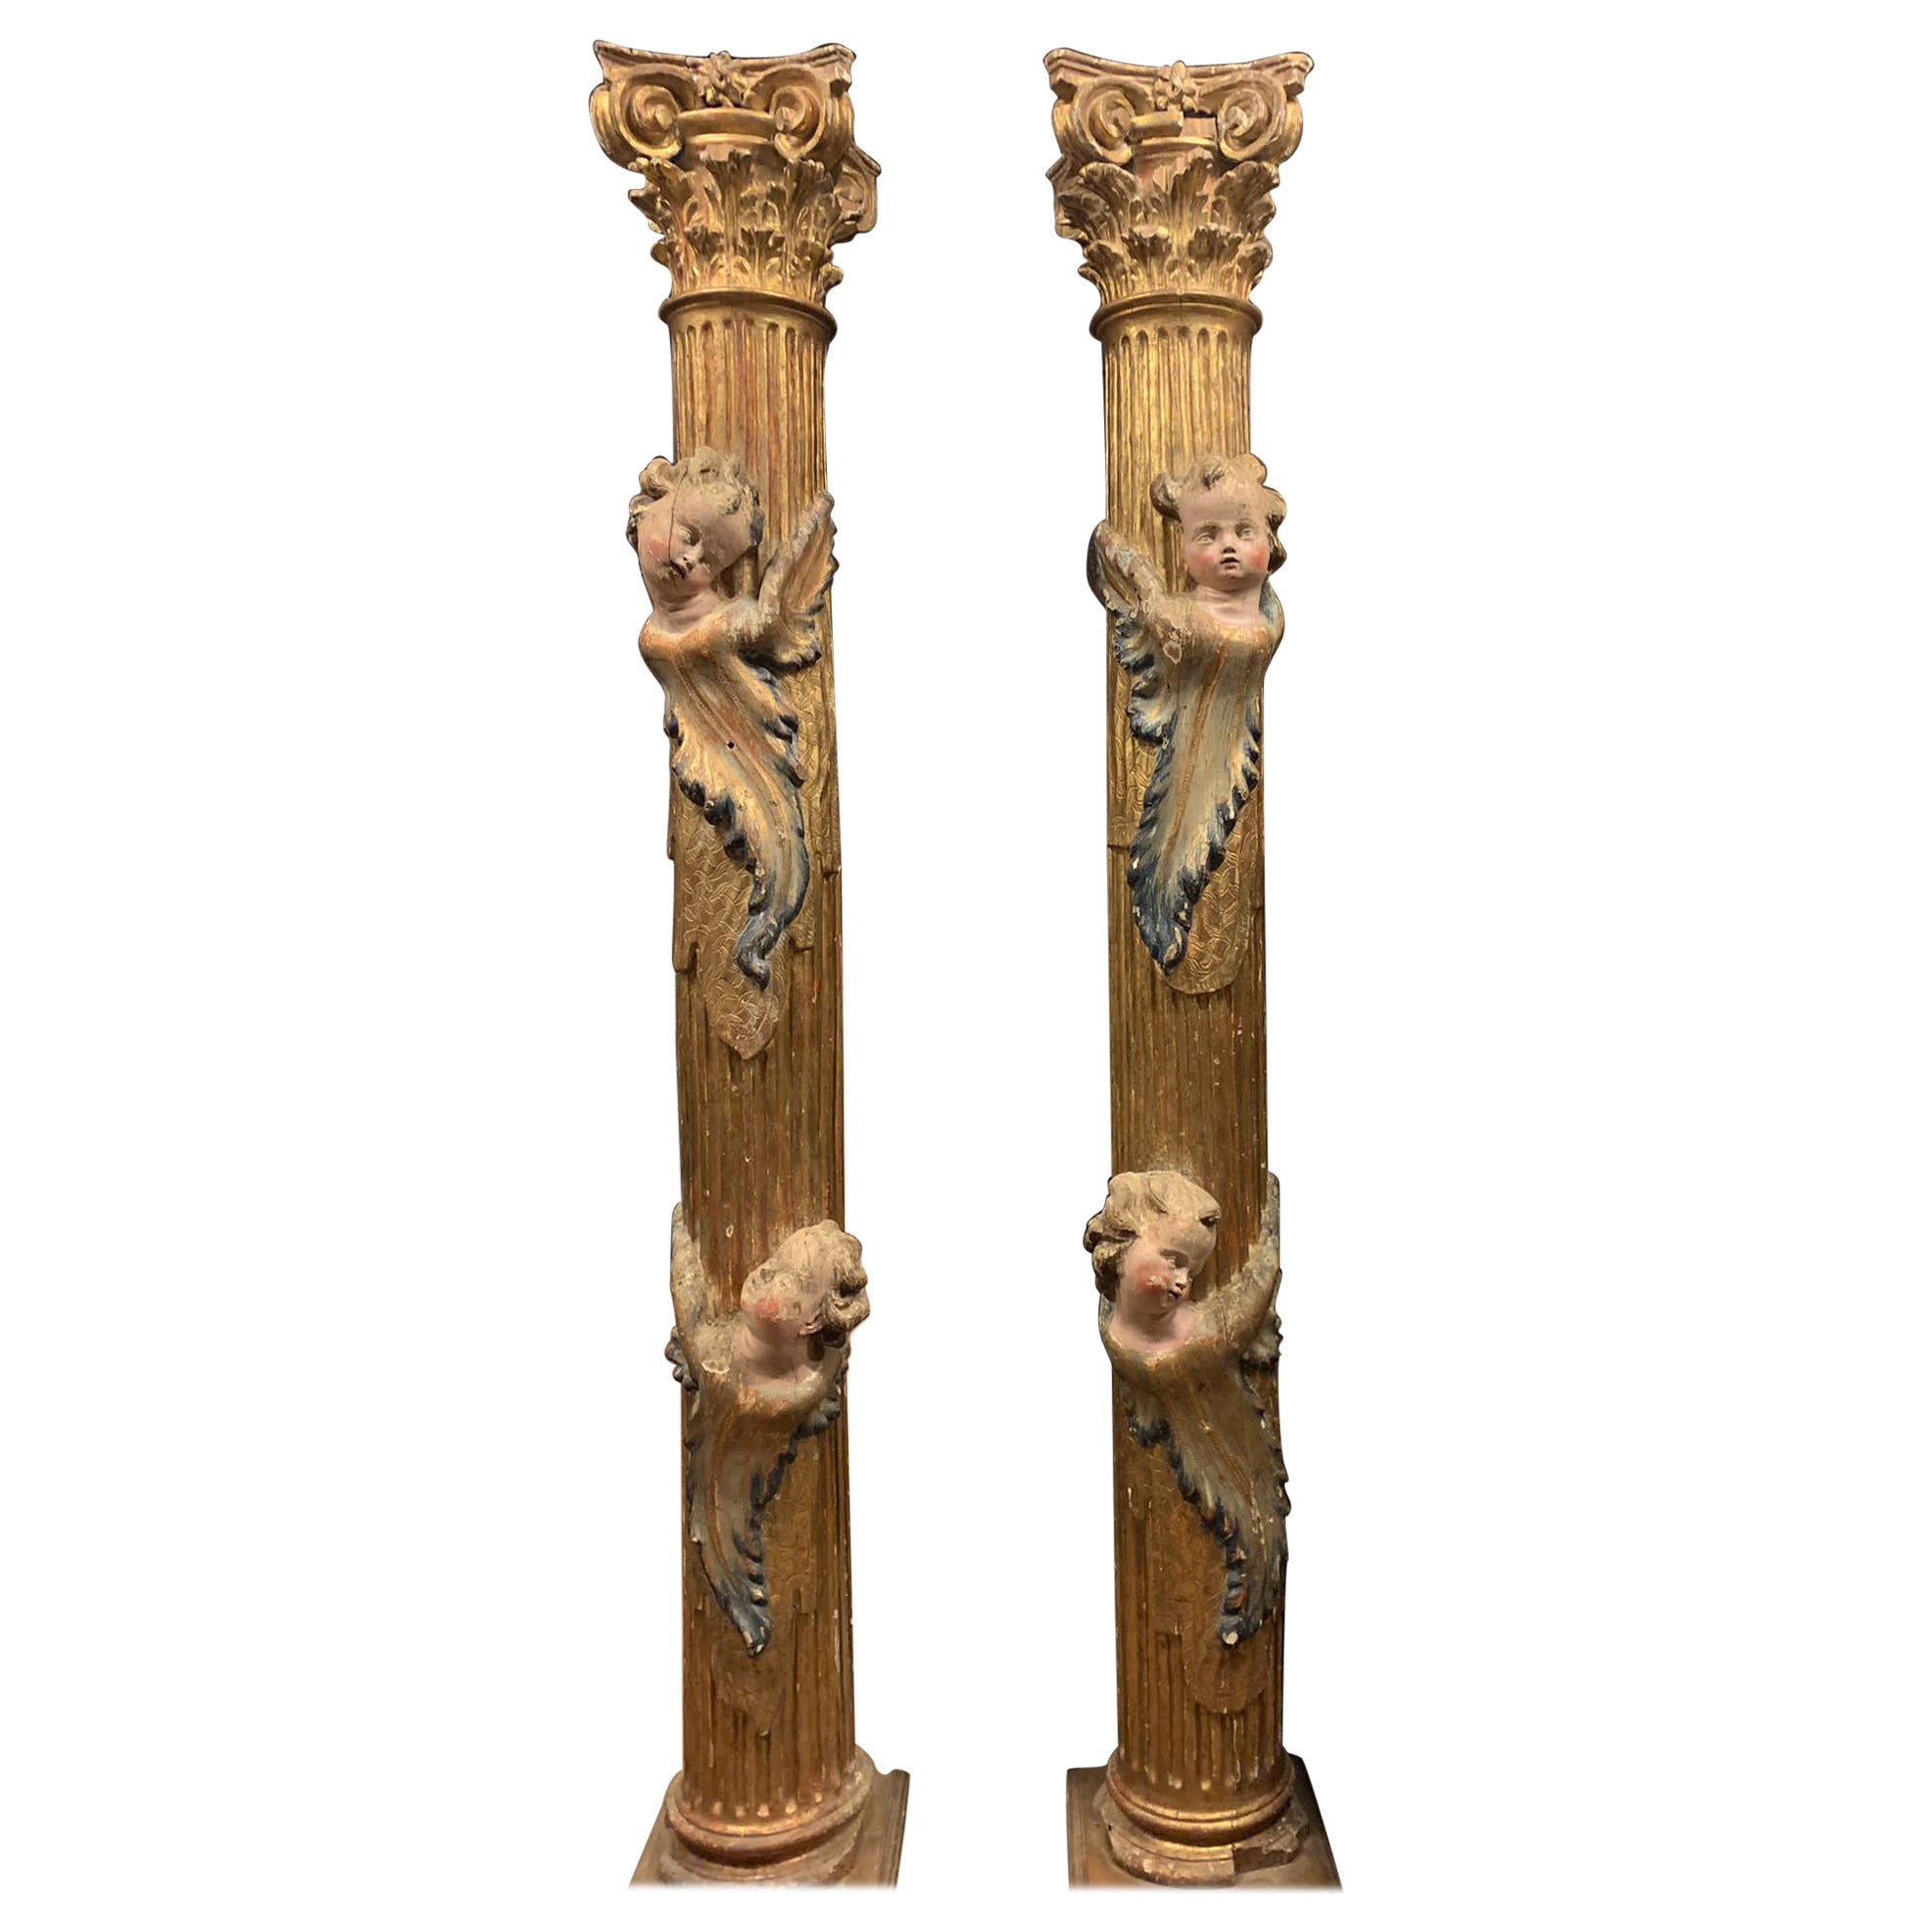 Paire de colonnes en bois, sculptées et dorées de putti polychromes, d'Espagne